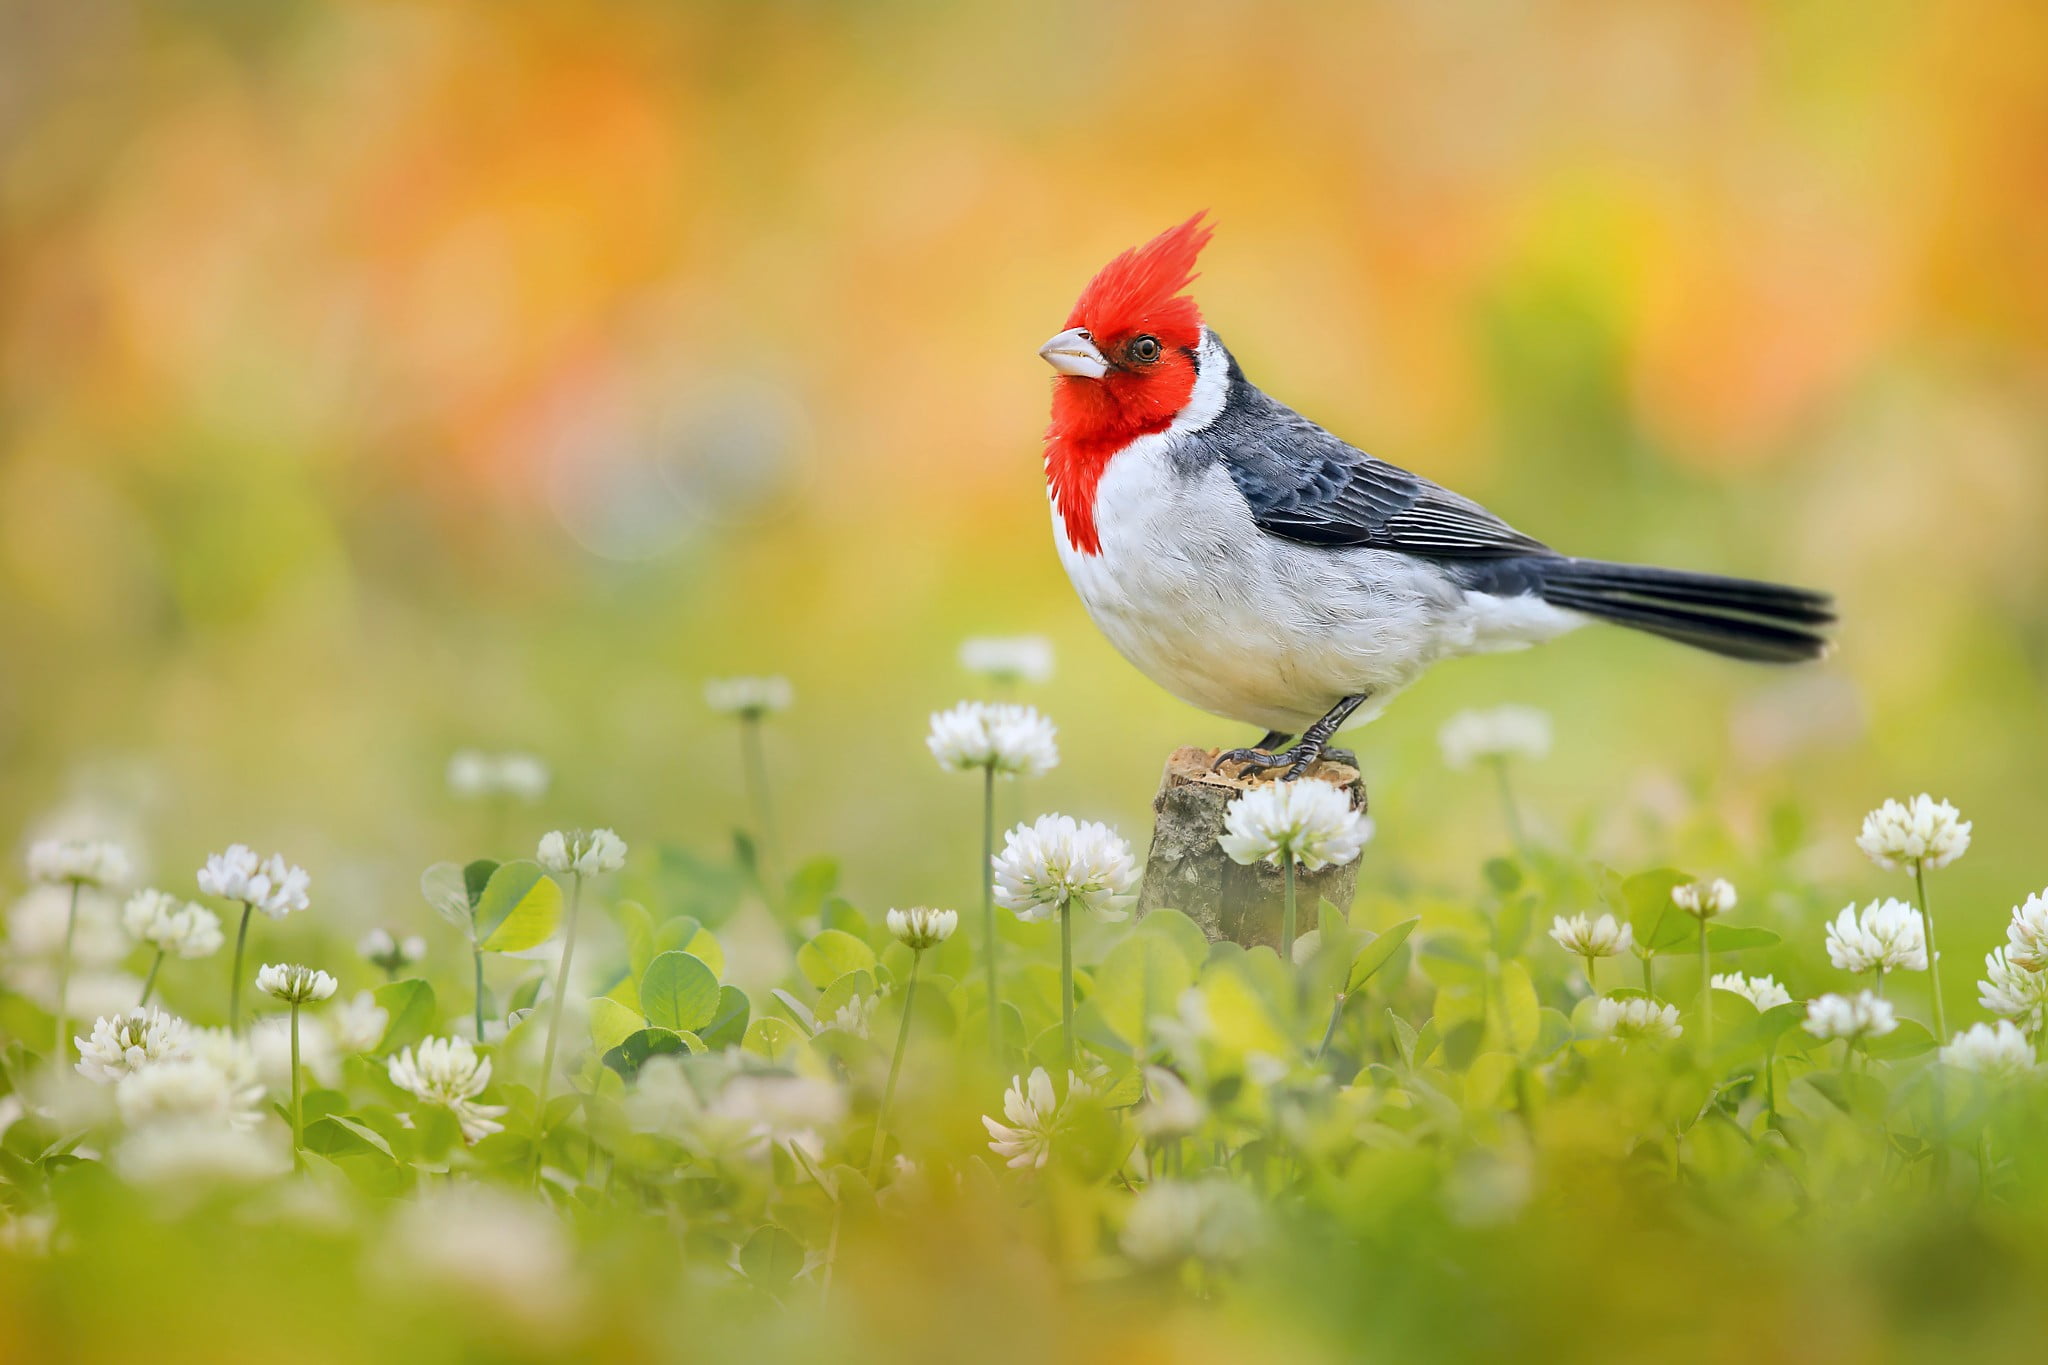 white and red bird, nature